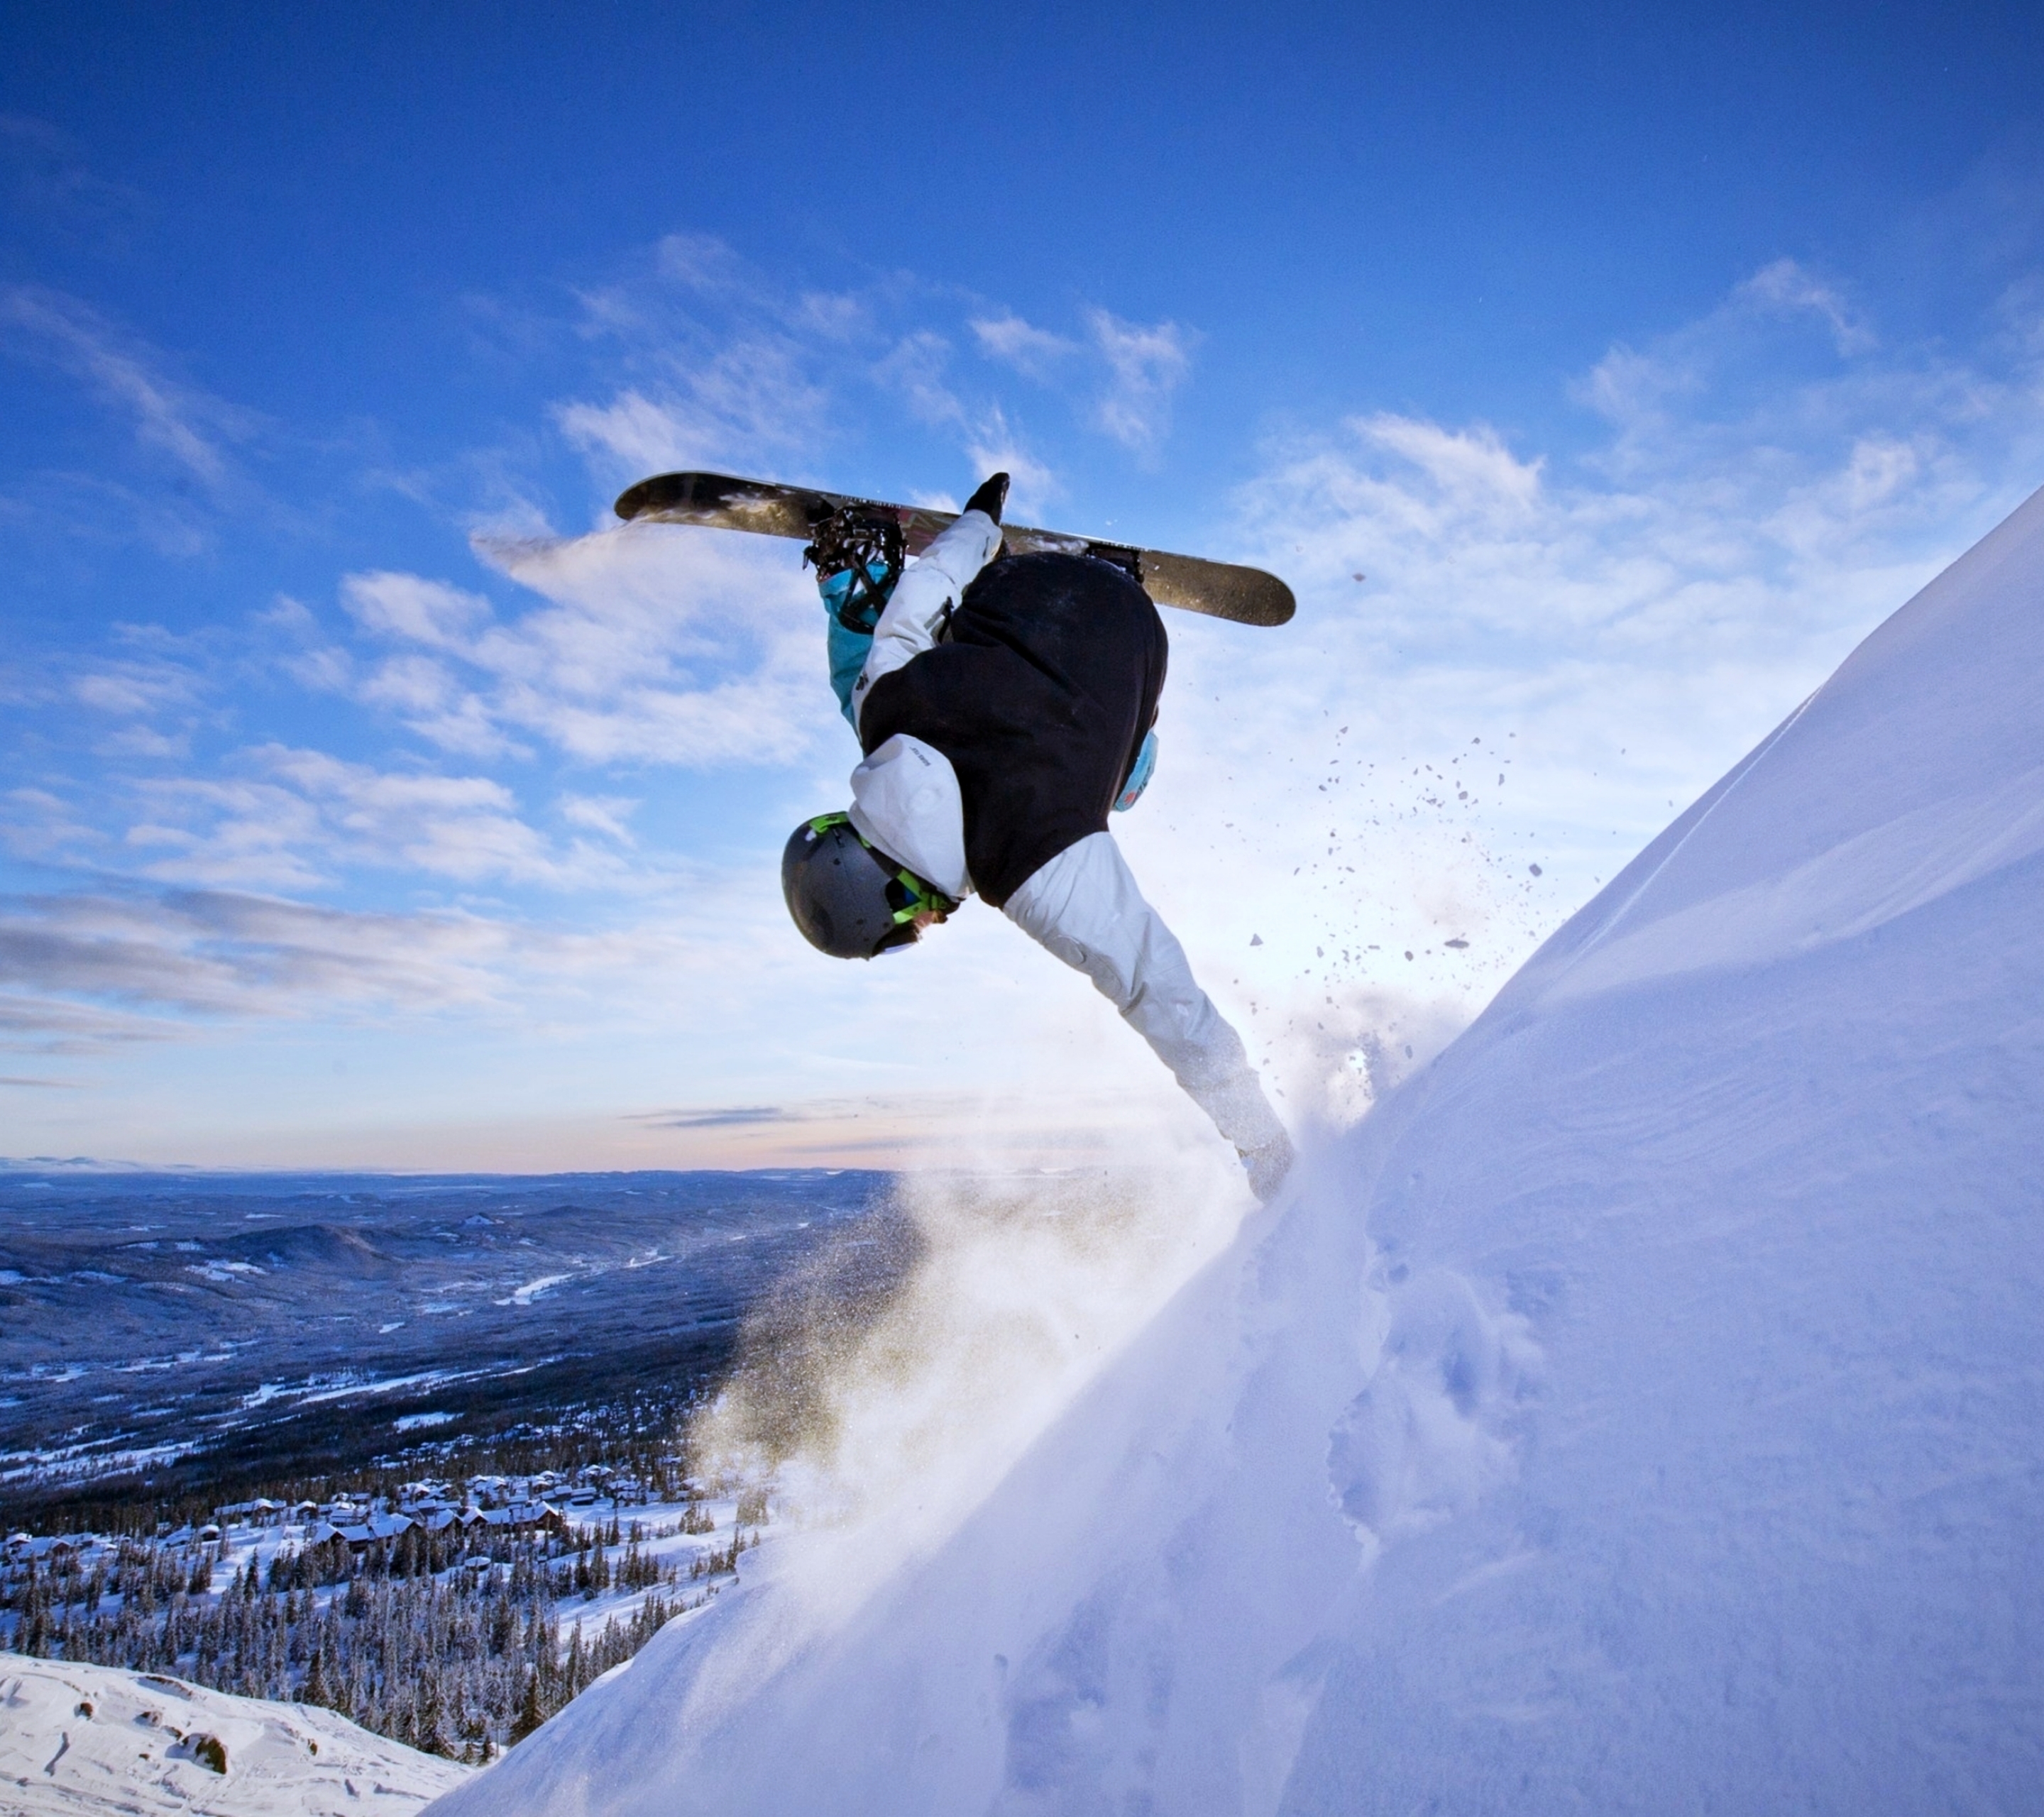 Скачать обои бесплатно Зима, Снег, Виды Спорта, Катание На Сноуборде картинка на рабочий стол ПК